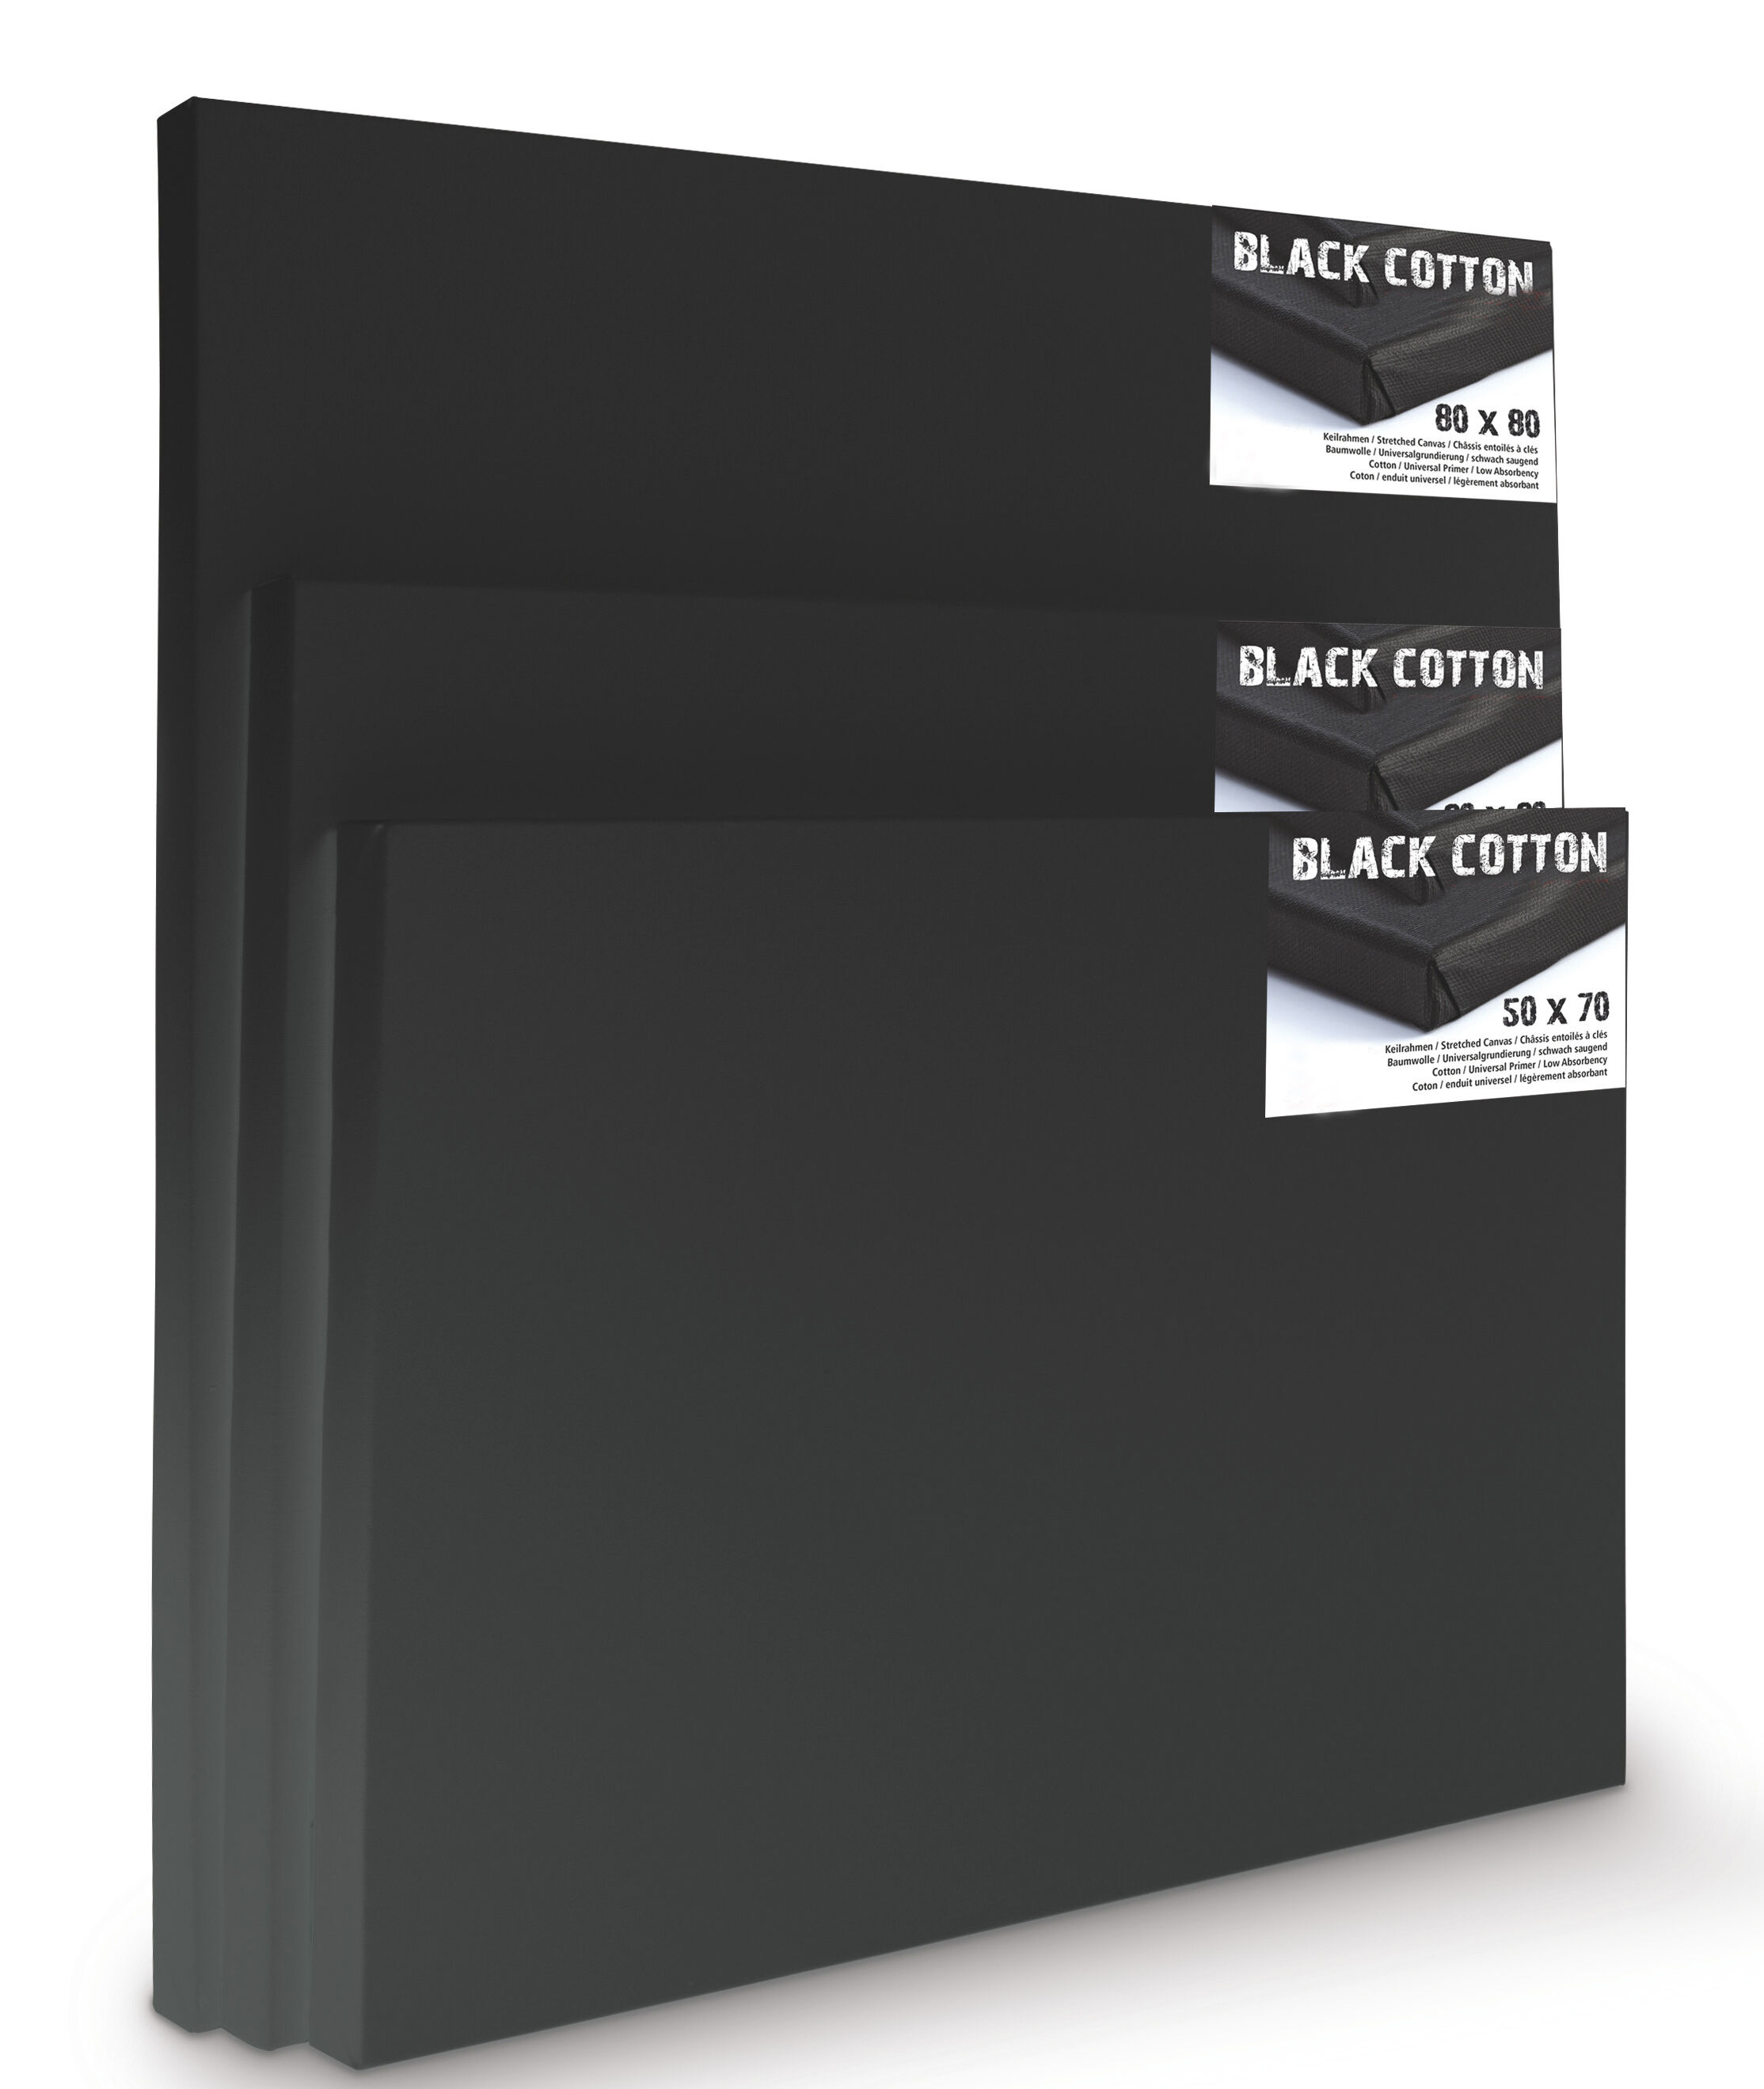 NEU Premium-Keilrahmen, schwarz grundiert, Vernissage 45mm Leistenstärke, 50x70cm - 1 Stück